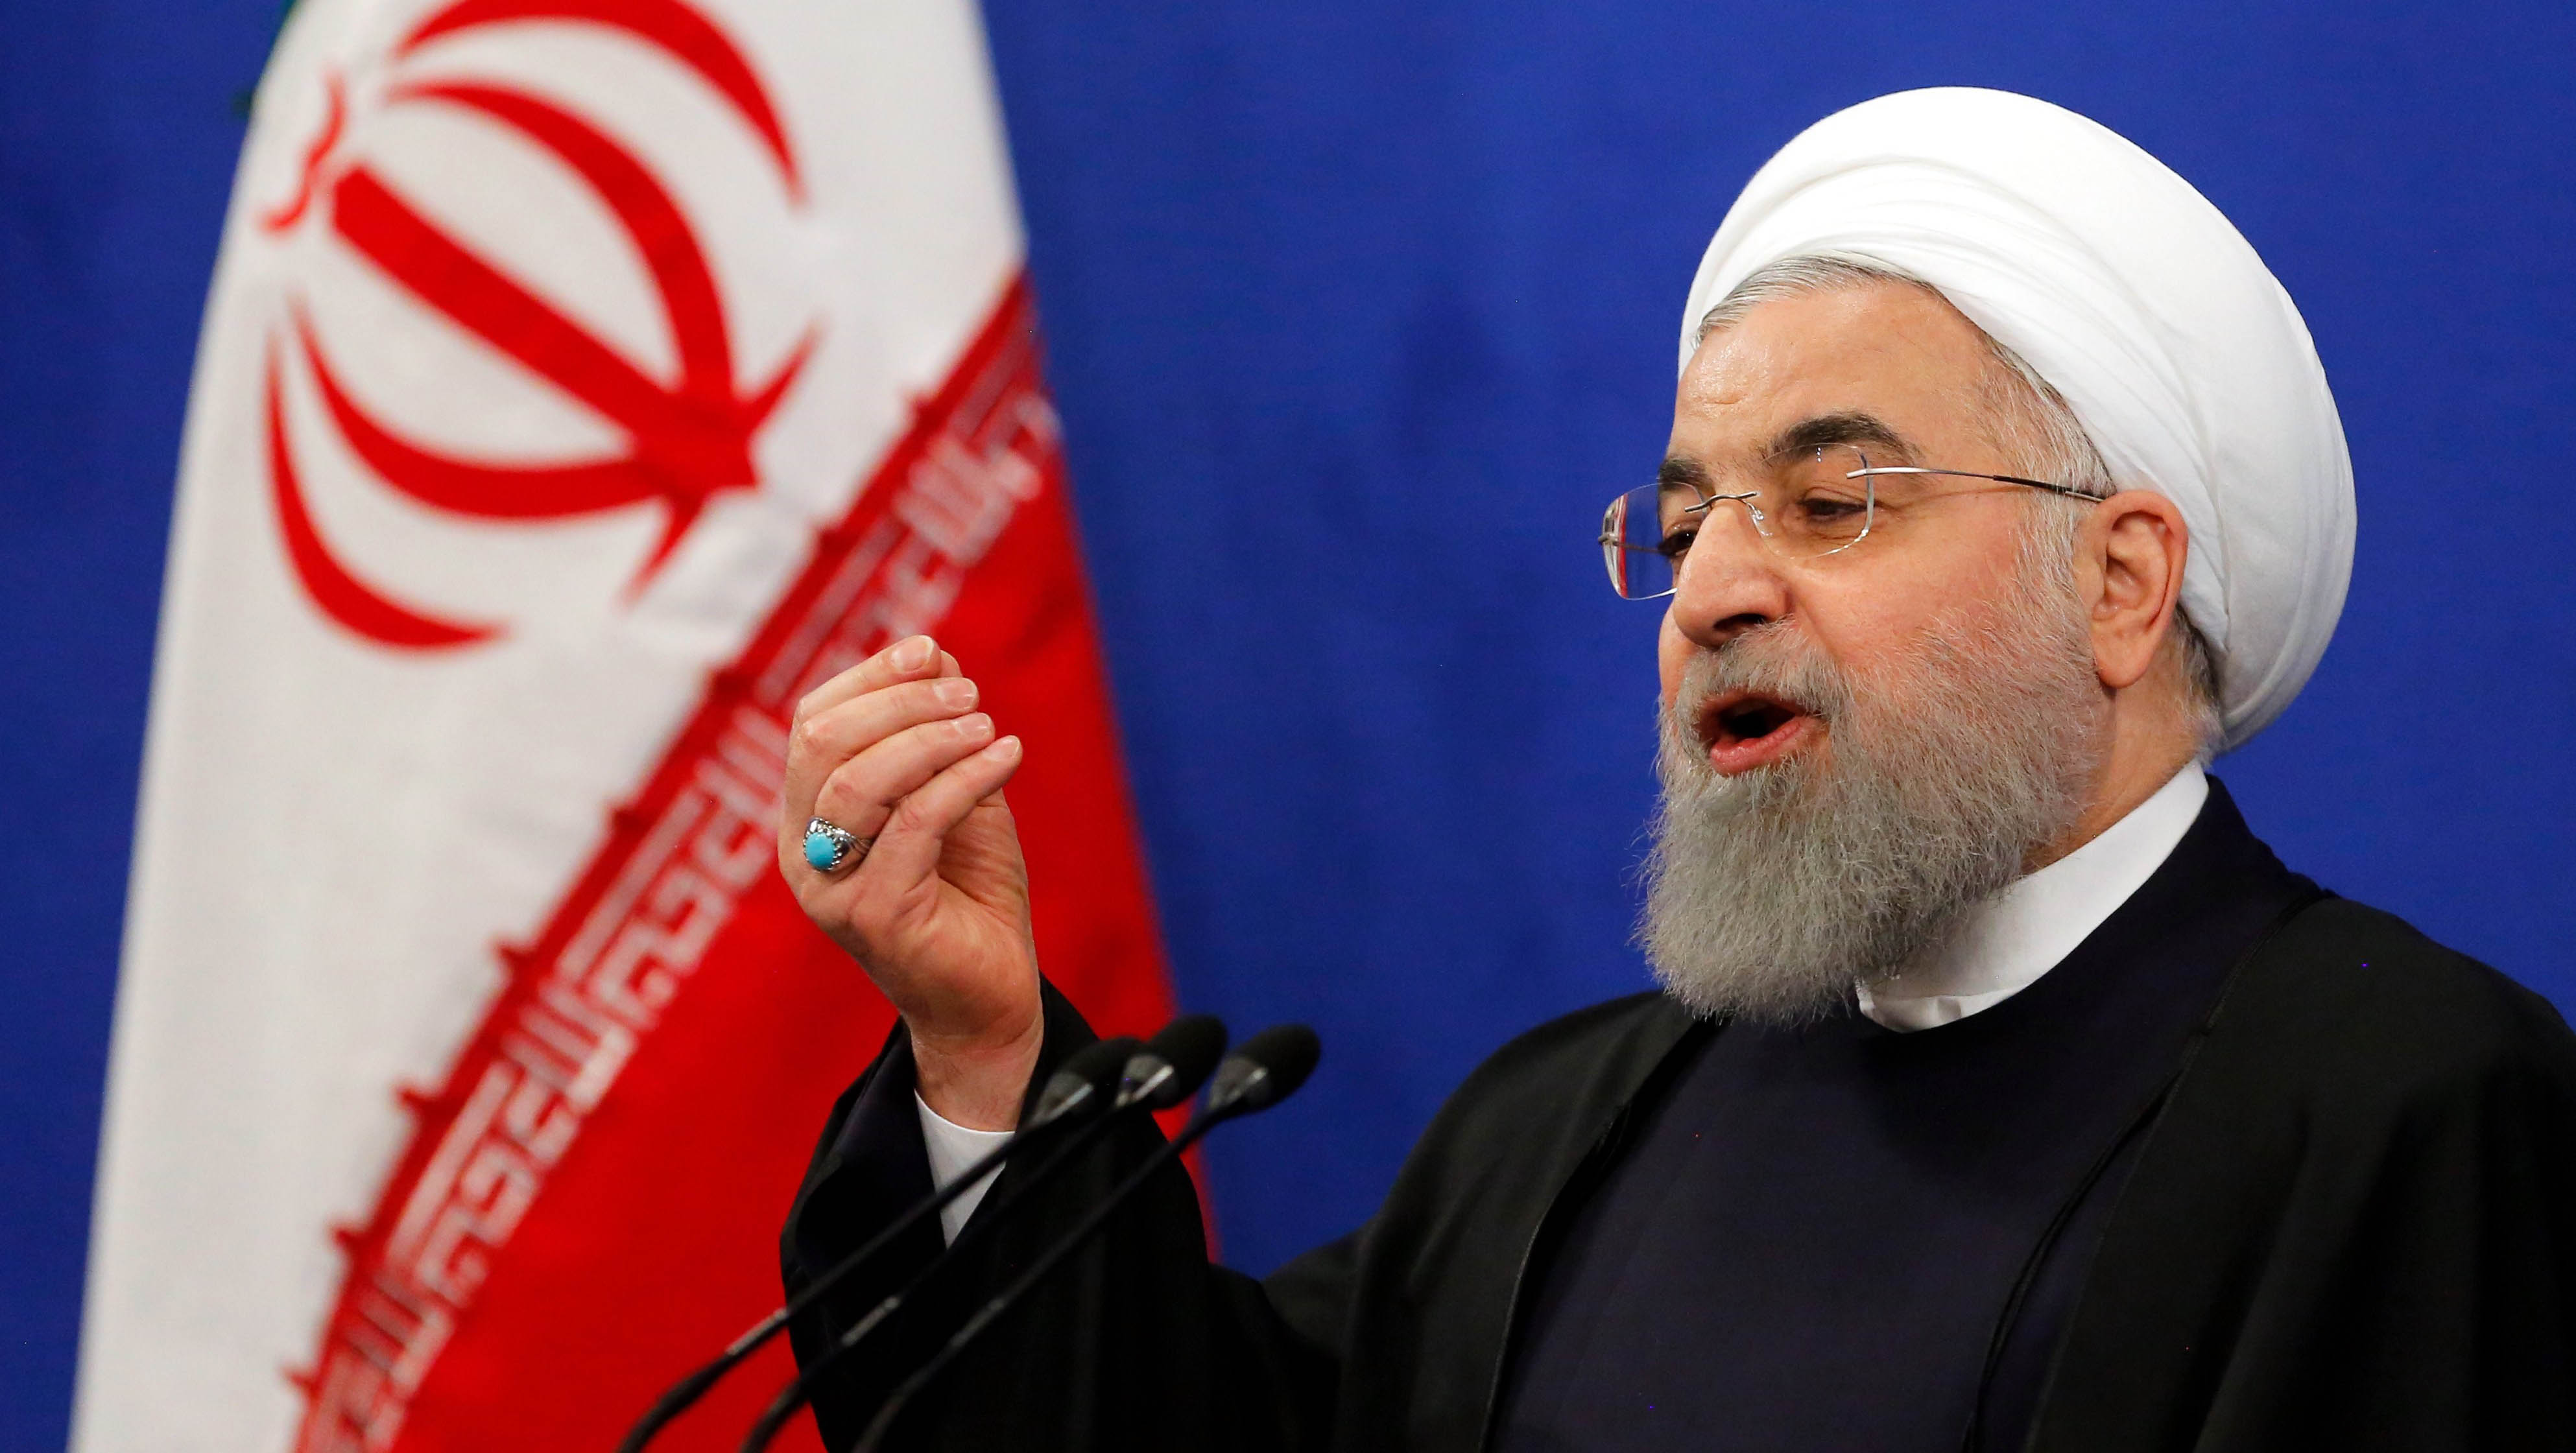 El presidente de Irán criticó al mandatario estadounidense Donald Trump por retirarse del Acuerdo Nuclear.